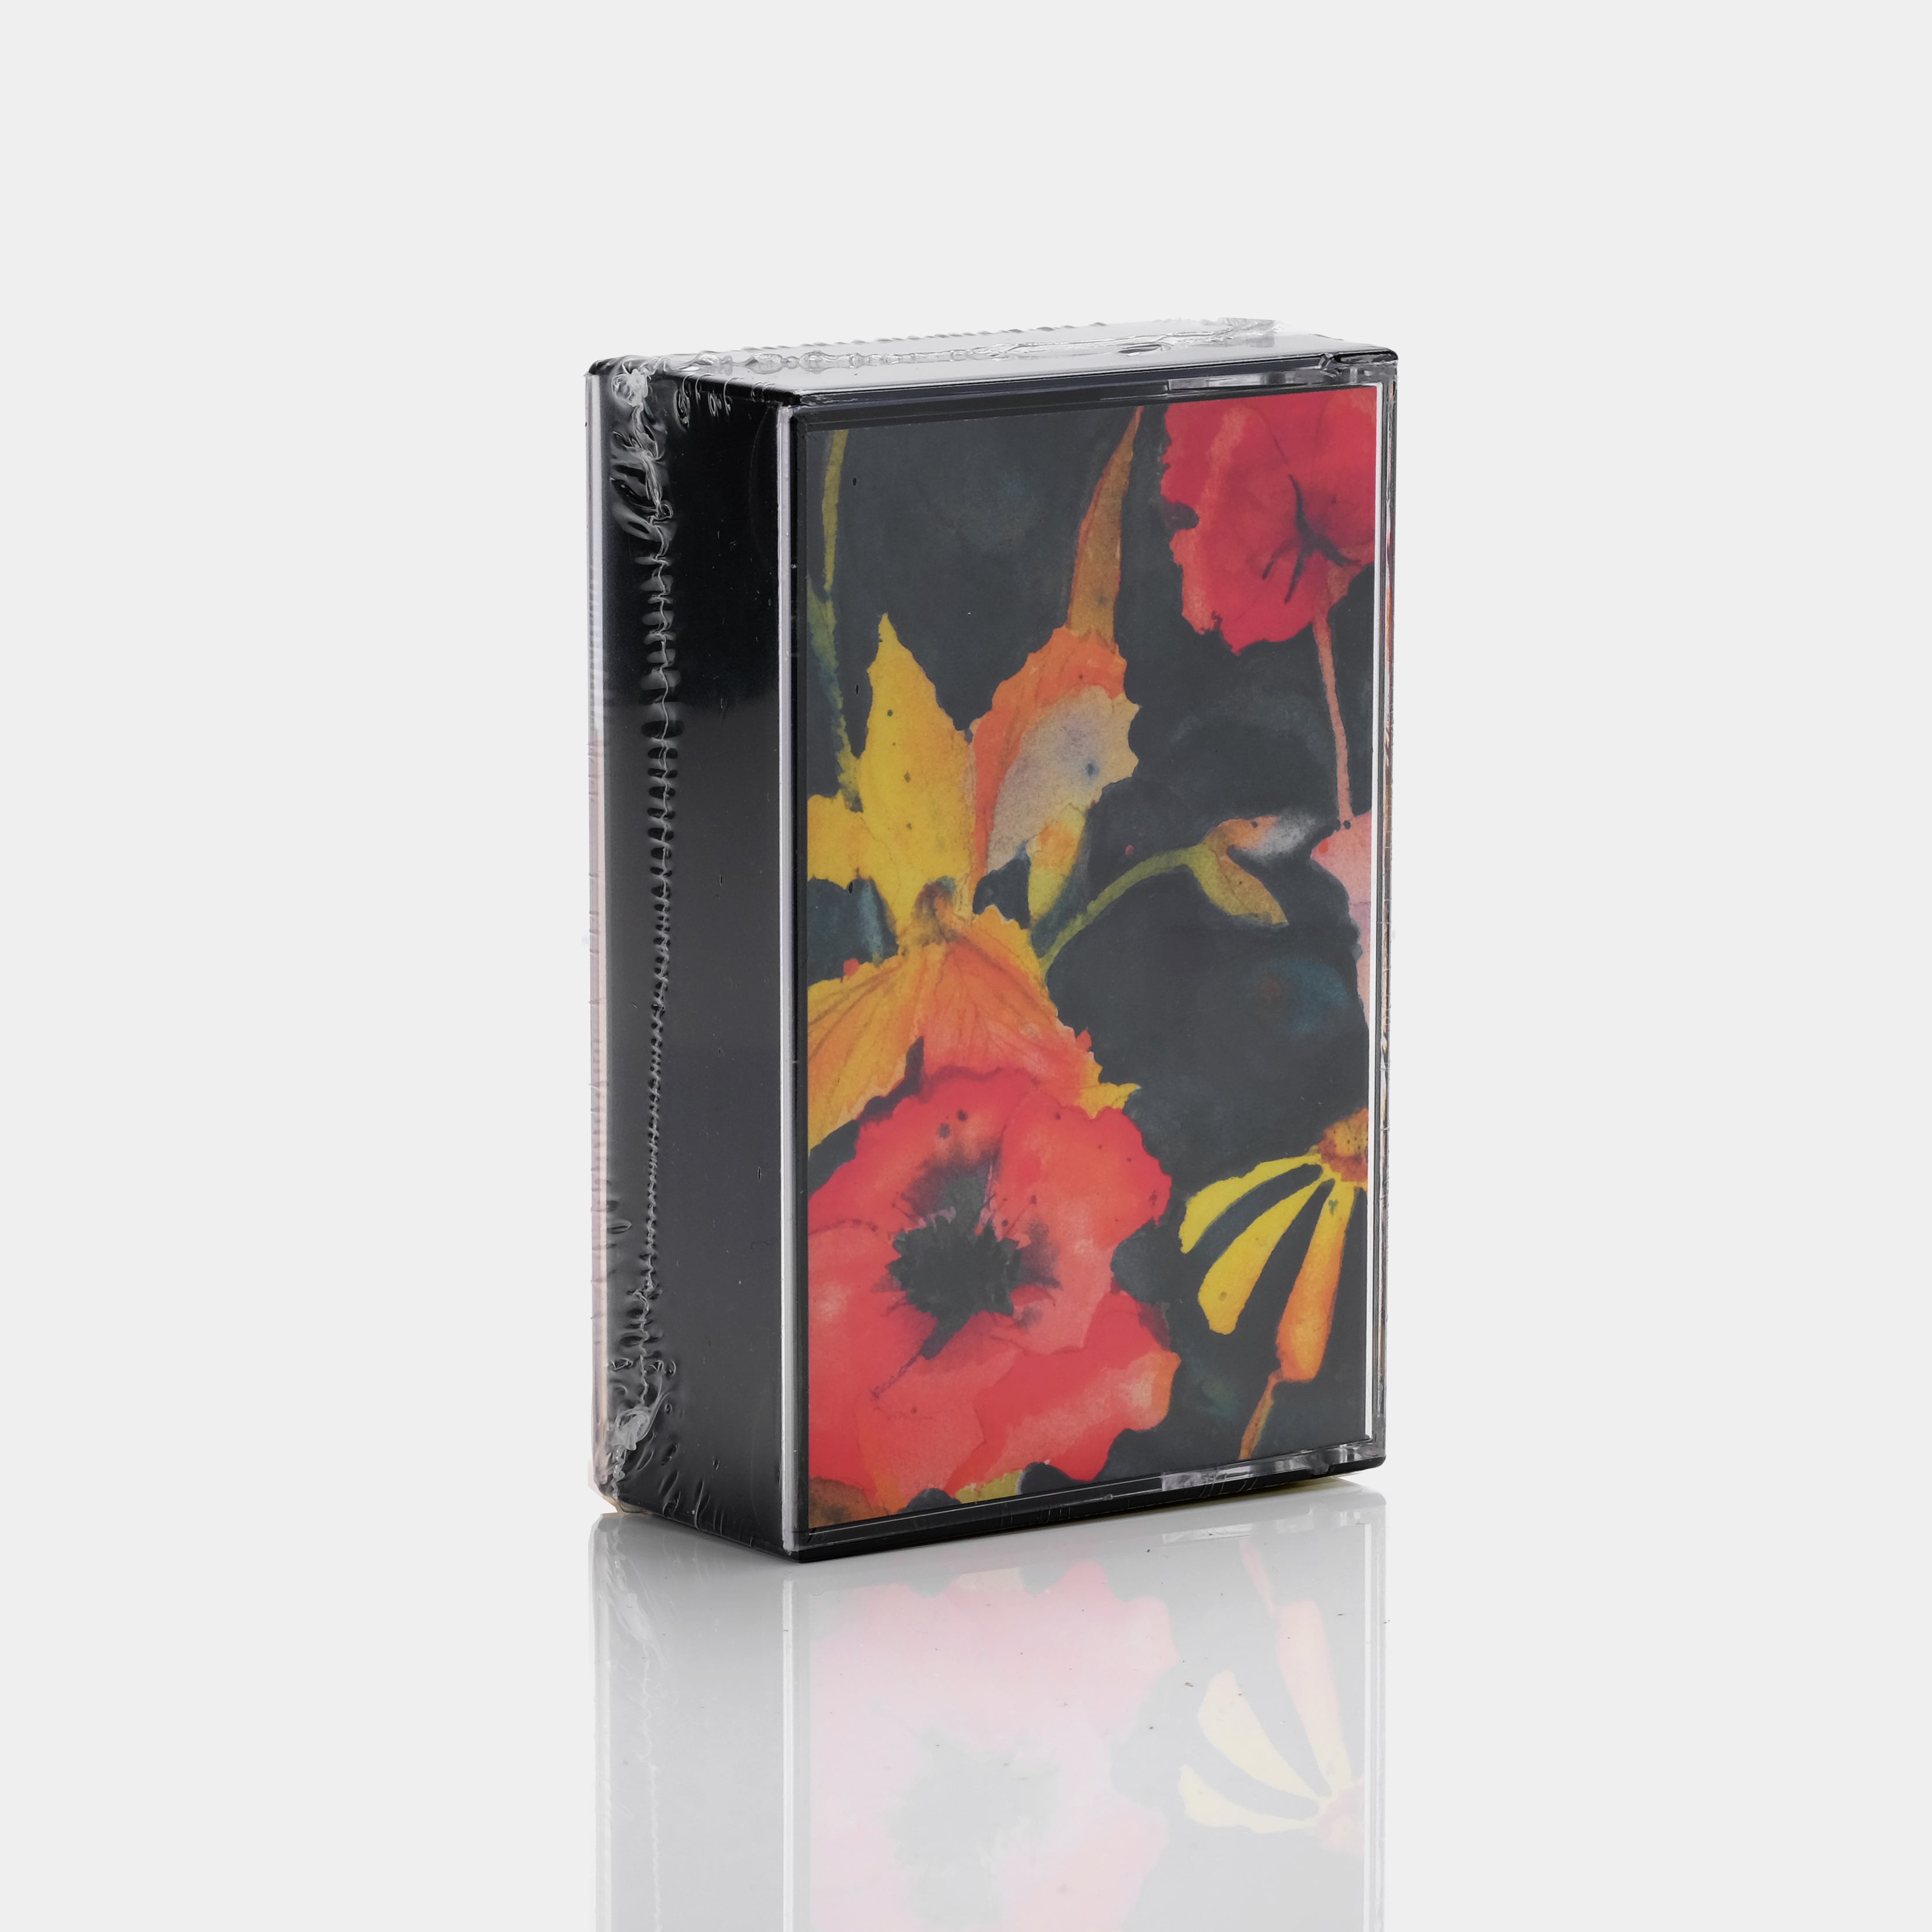 Adrianne Lenker - Songs And Instrumentals Cassette Tape Set